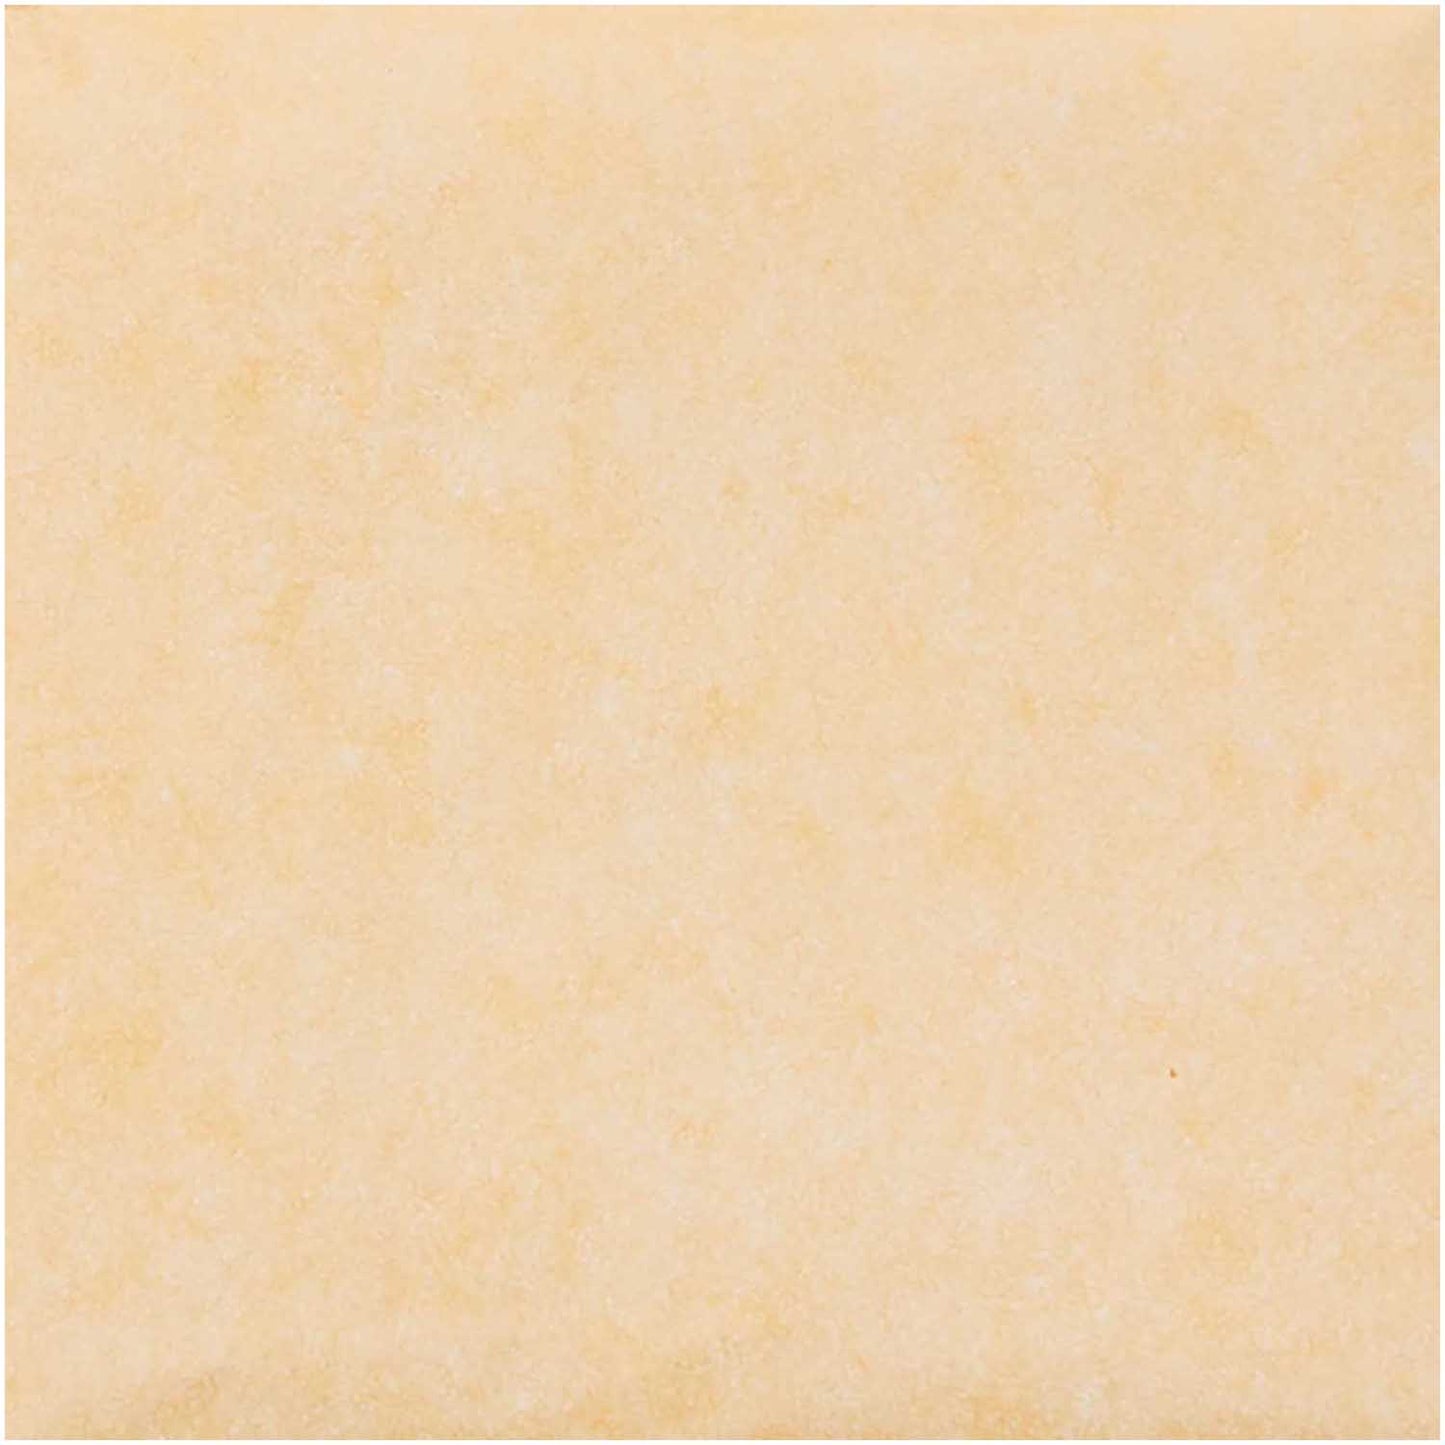 hedvábný balicí papír — yellowgold